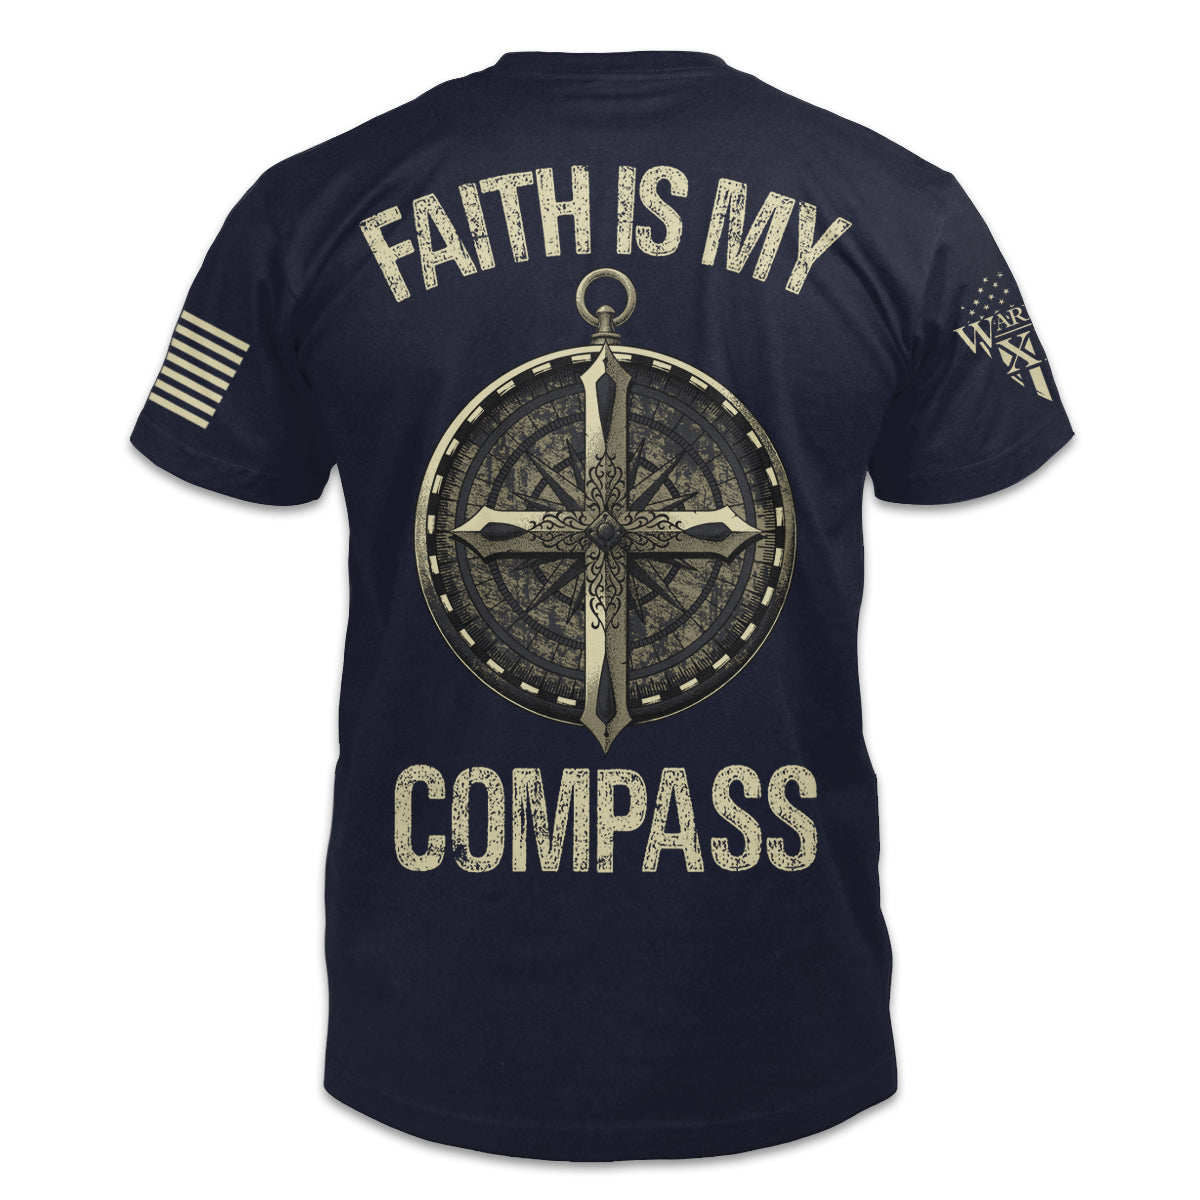 Faith Is My Compass